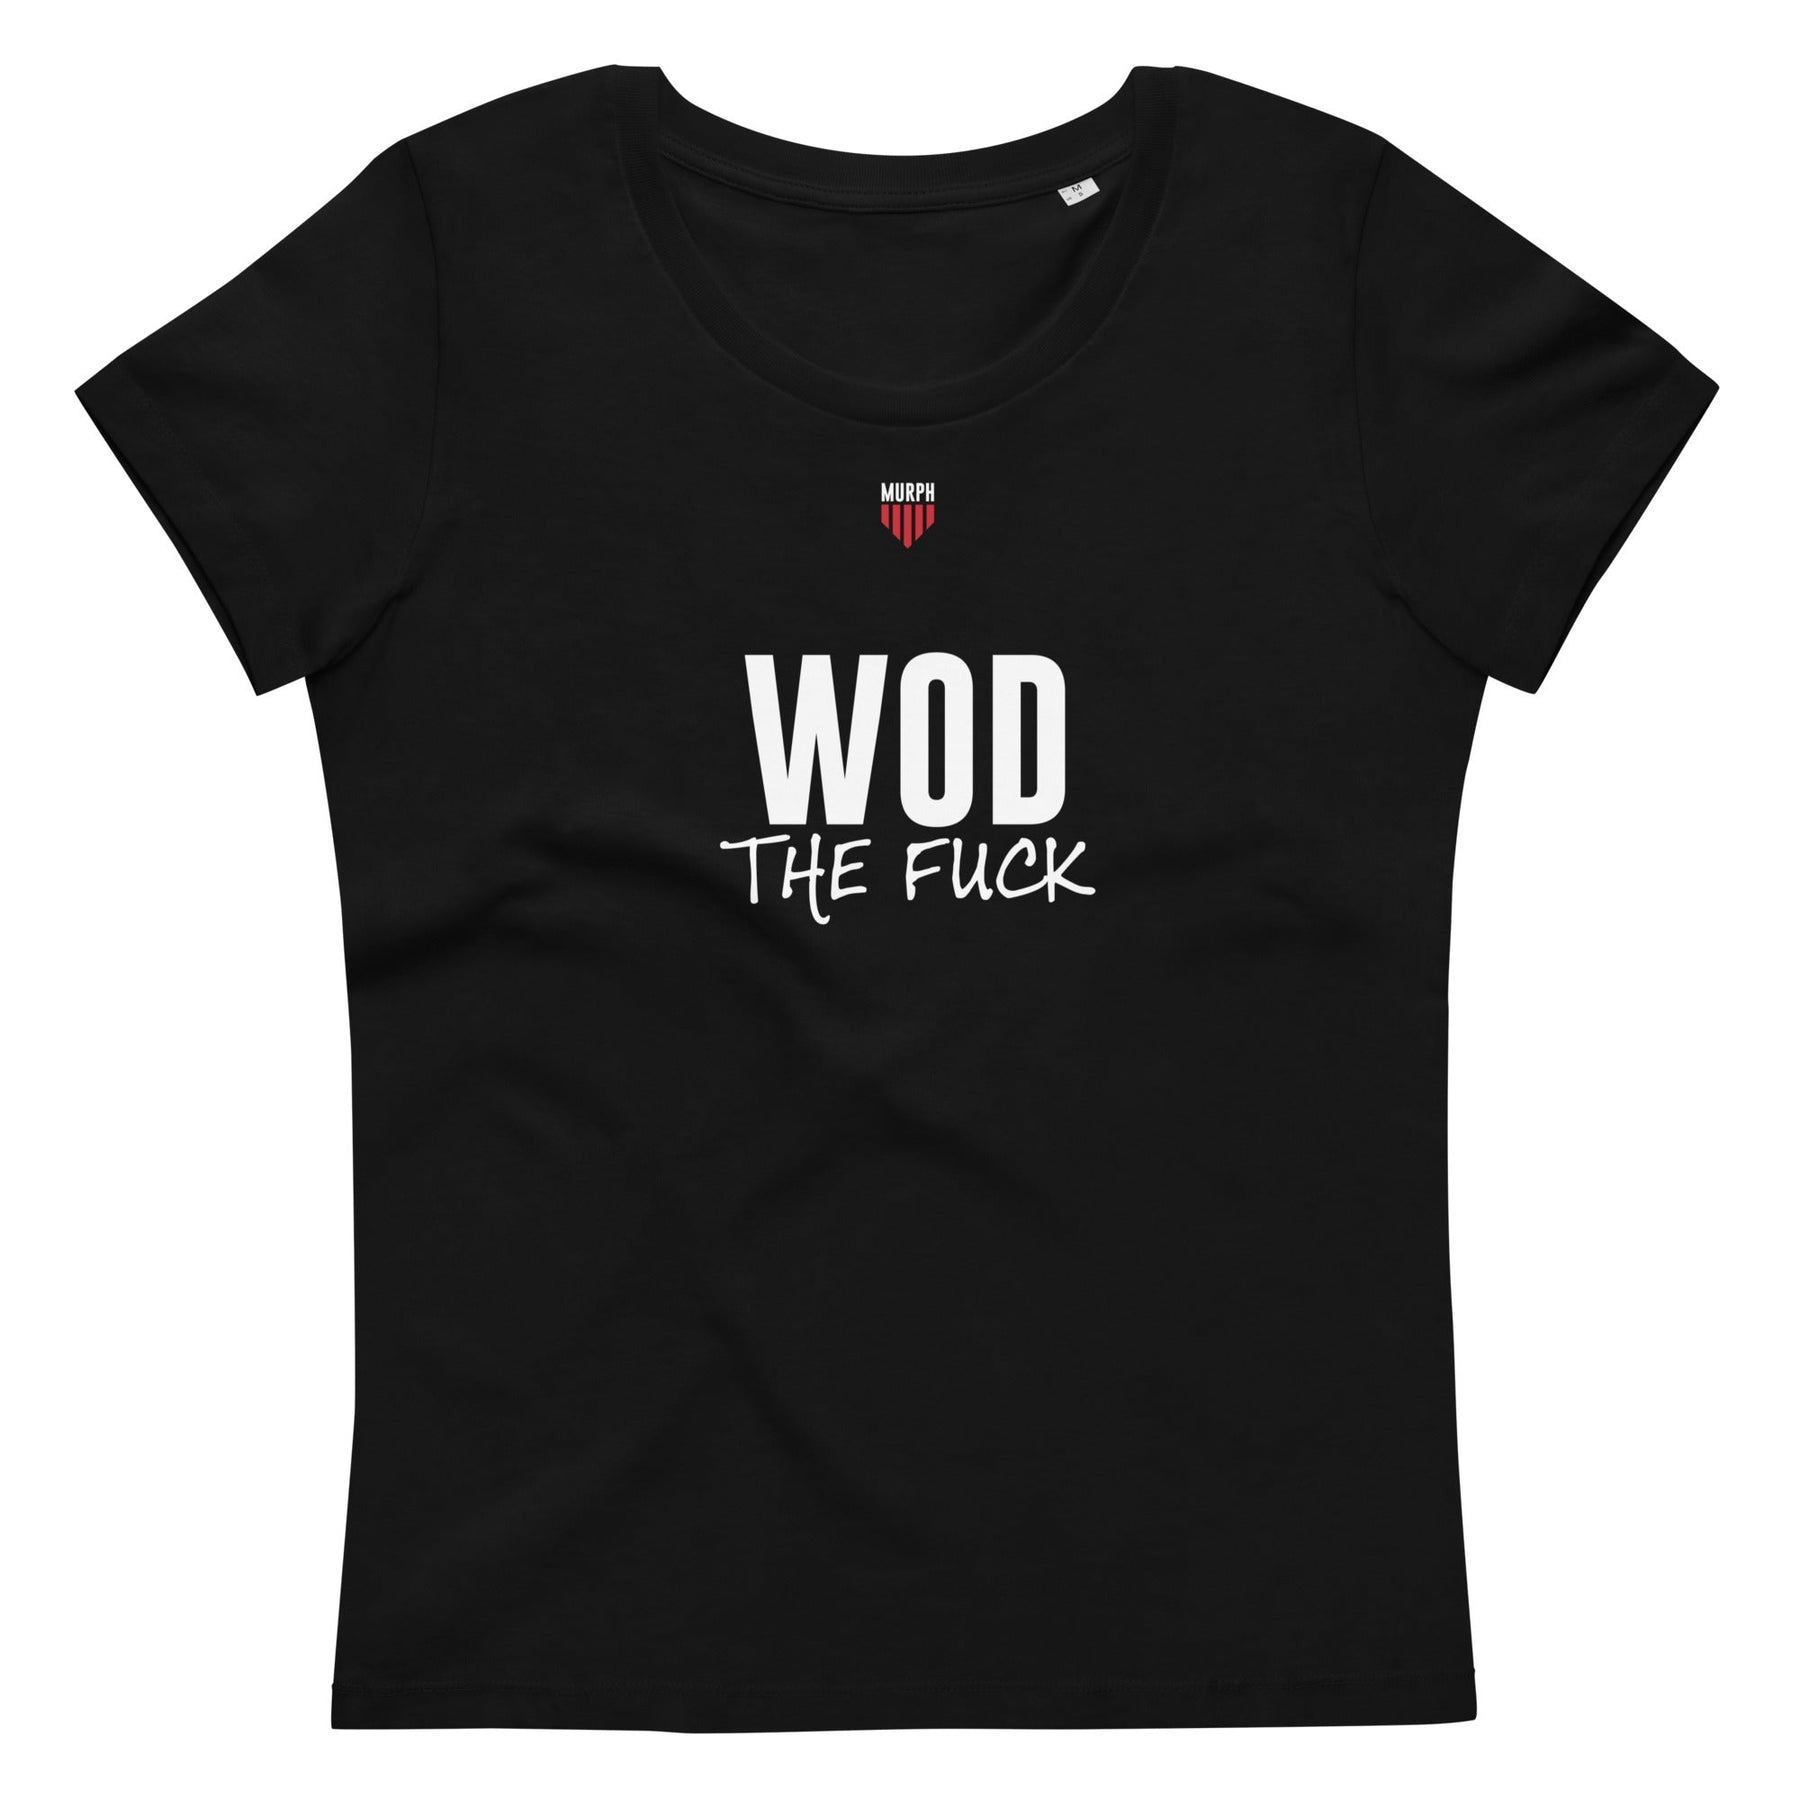 T-shirt - WOD MURPH